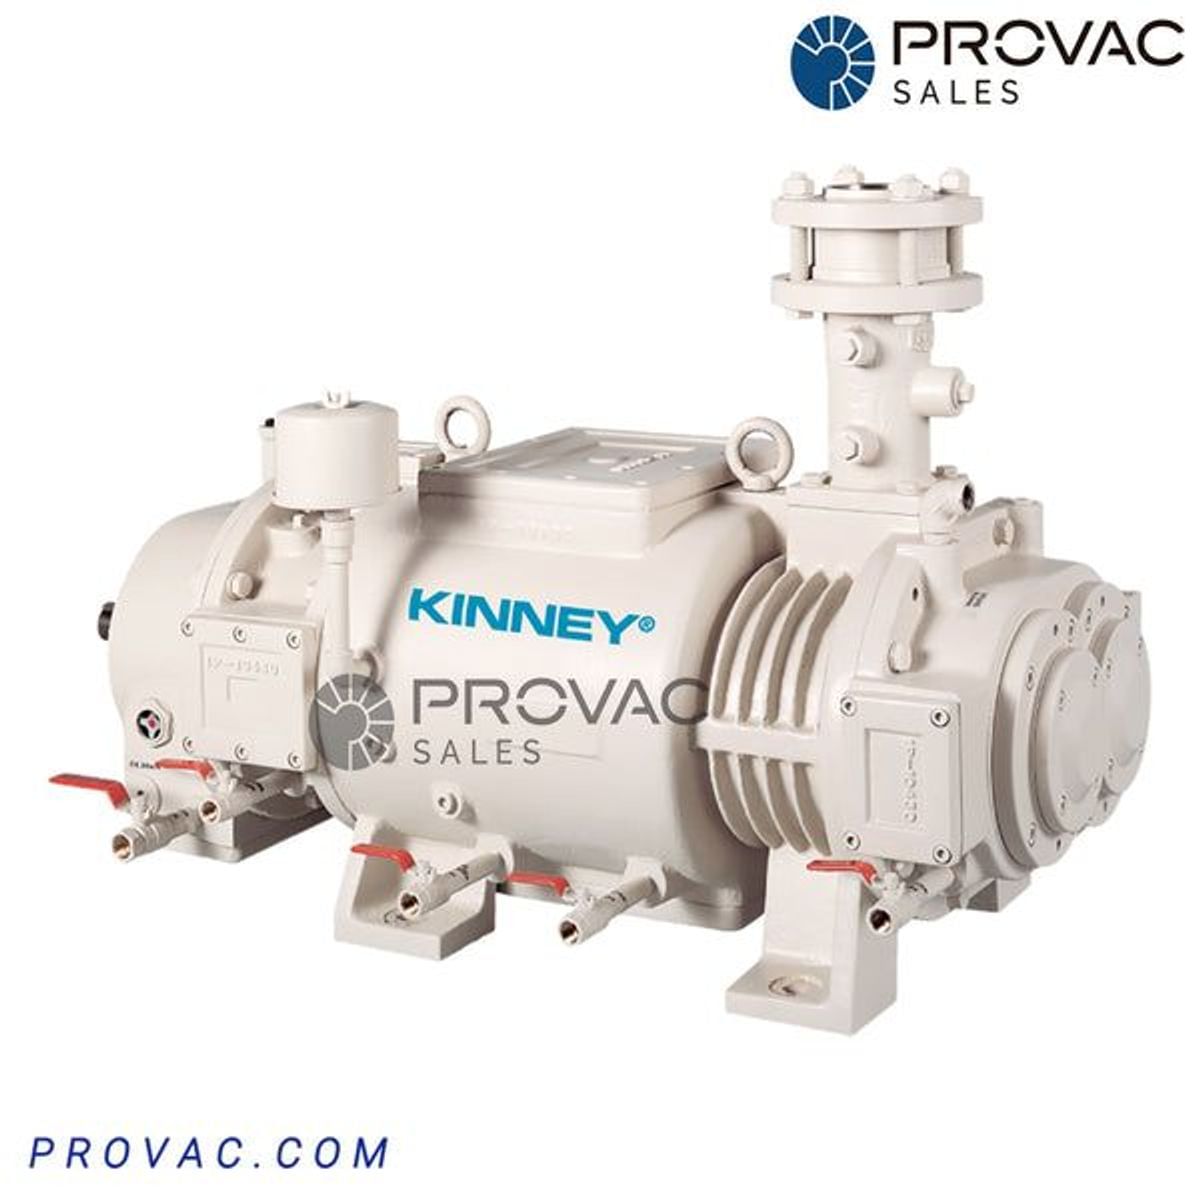 Kinney KDP 150 Dry Screw Vacuum Pump Image 1